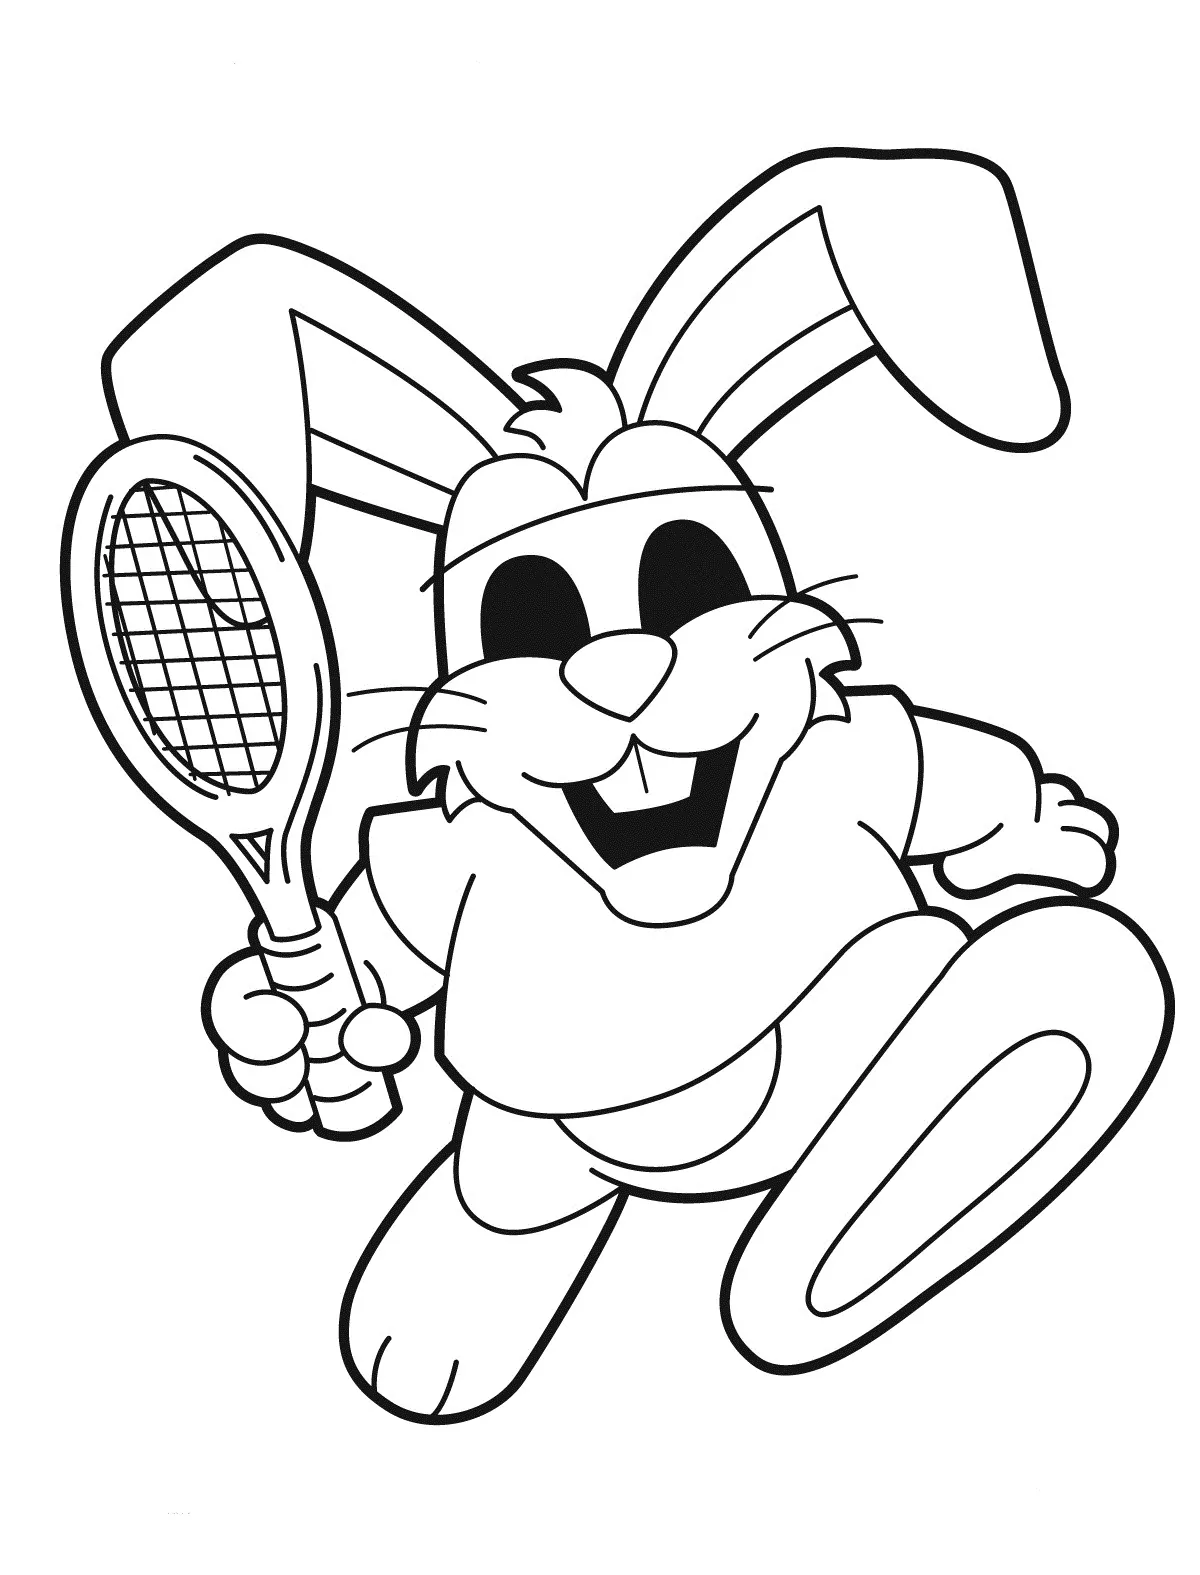 Rabbit Playing Tennis